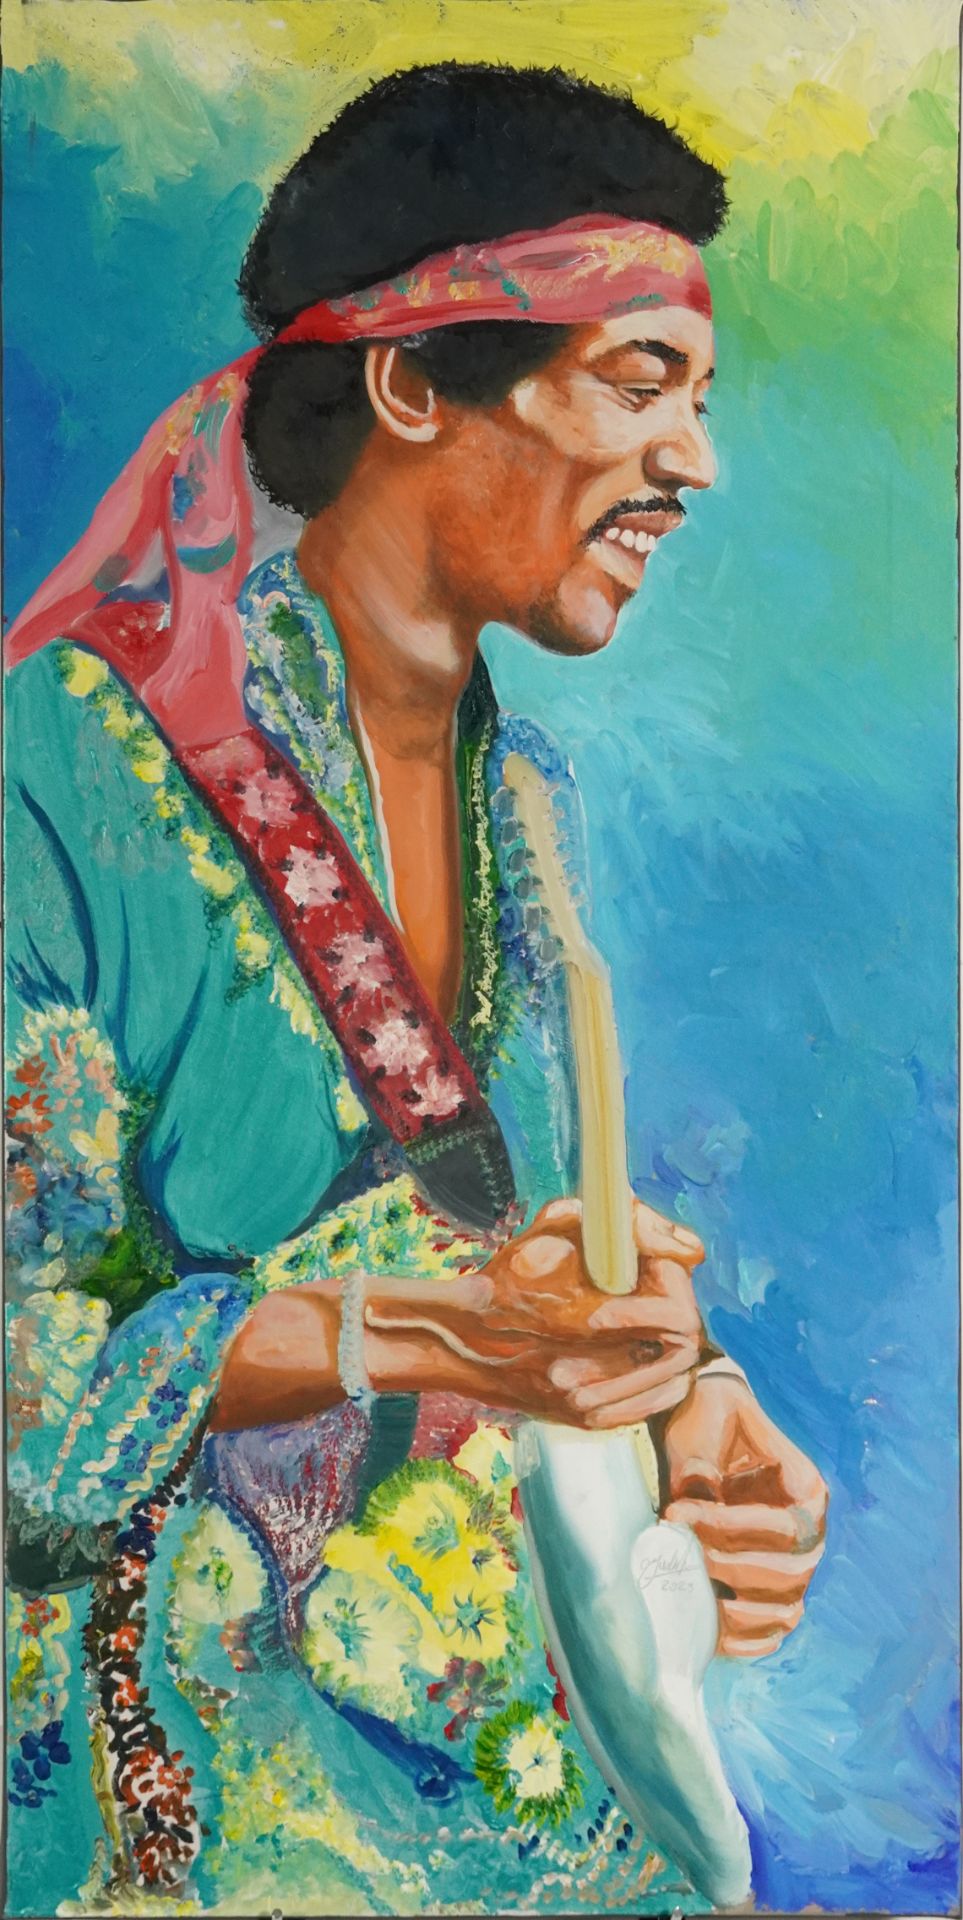 Clive Fredriksson - Jimi Hendrix, contemporary oil on canvas, unframed, 100.5cm x 50.5cm